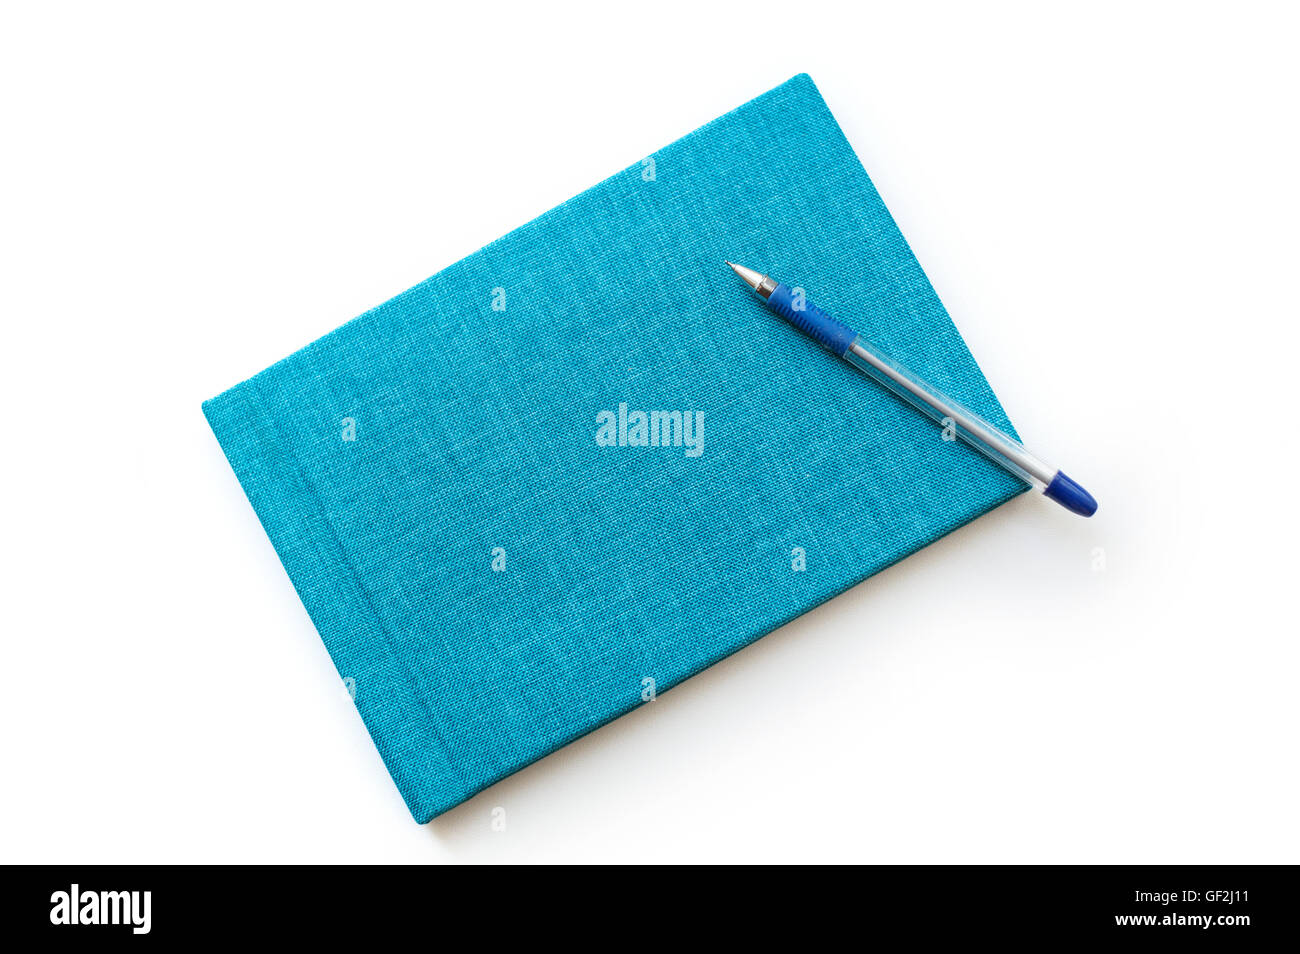 Penna e turchese del notebook su sfondo bianco Foto Stock